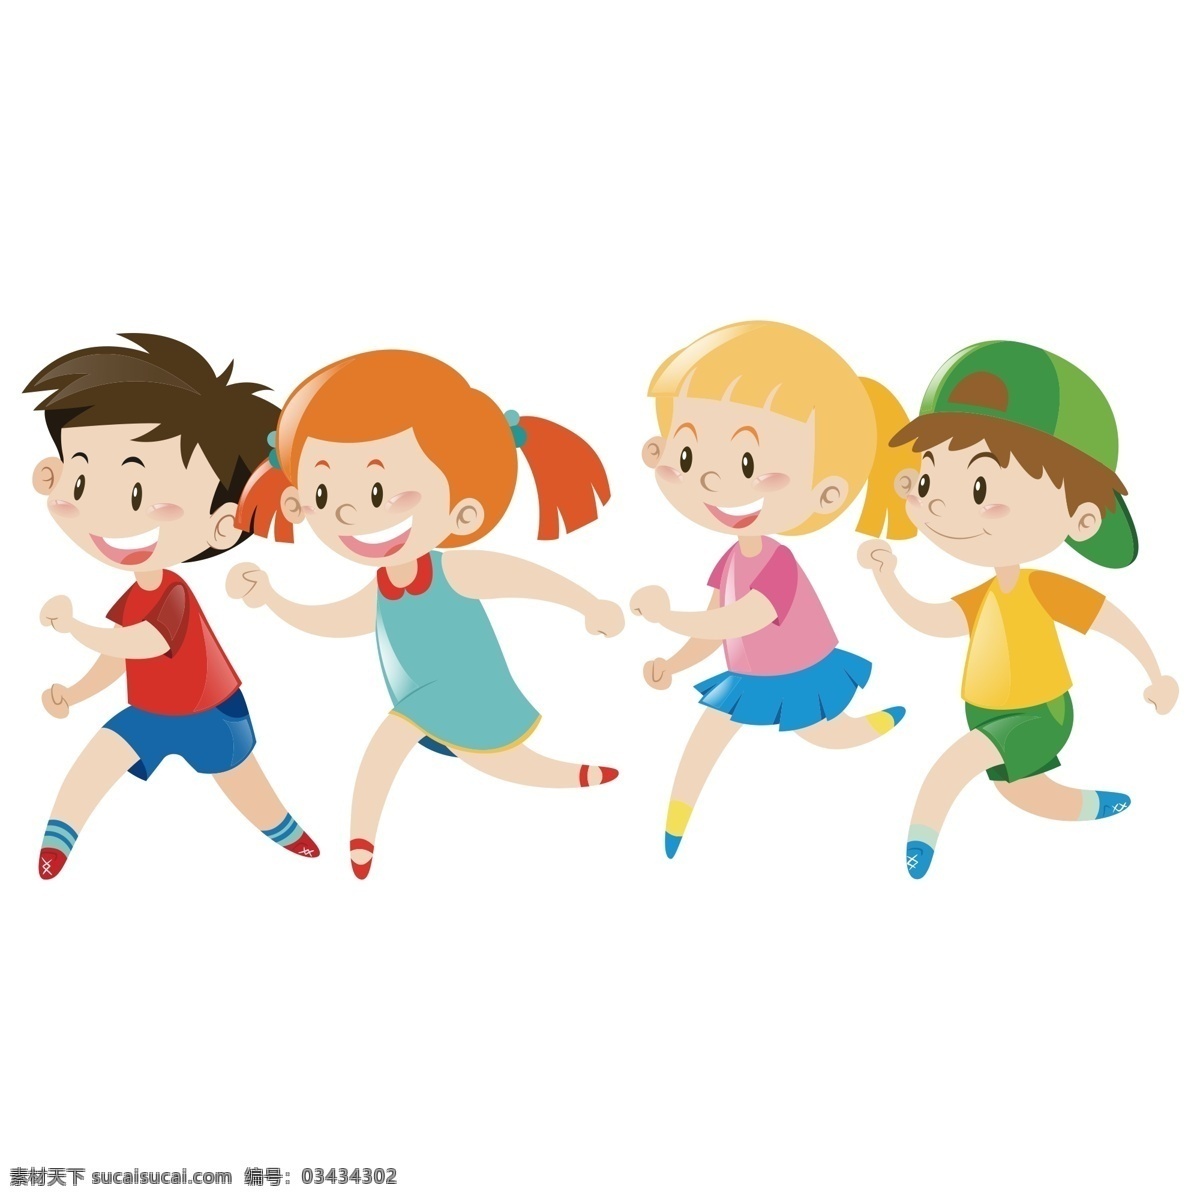 手绘 奔跑 的卡 通 儿童 元素 卡通 小孩 小学生 动漫动画 动漫人物